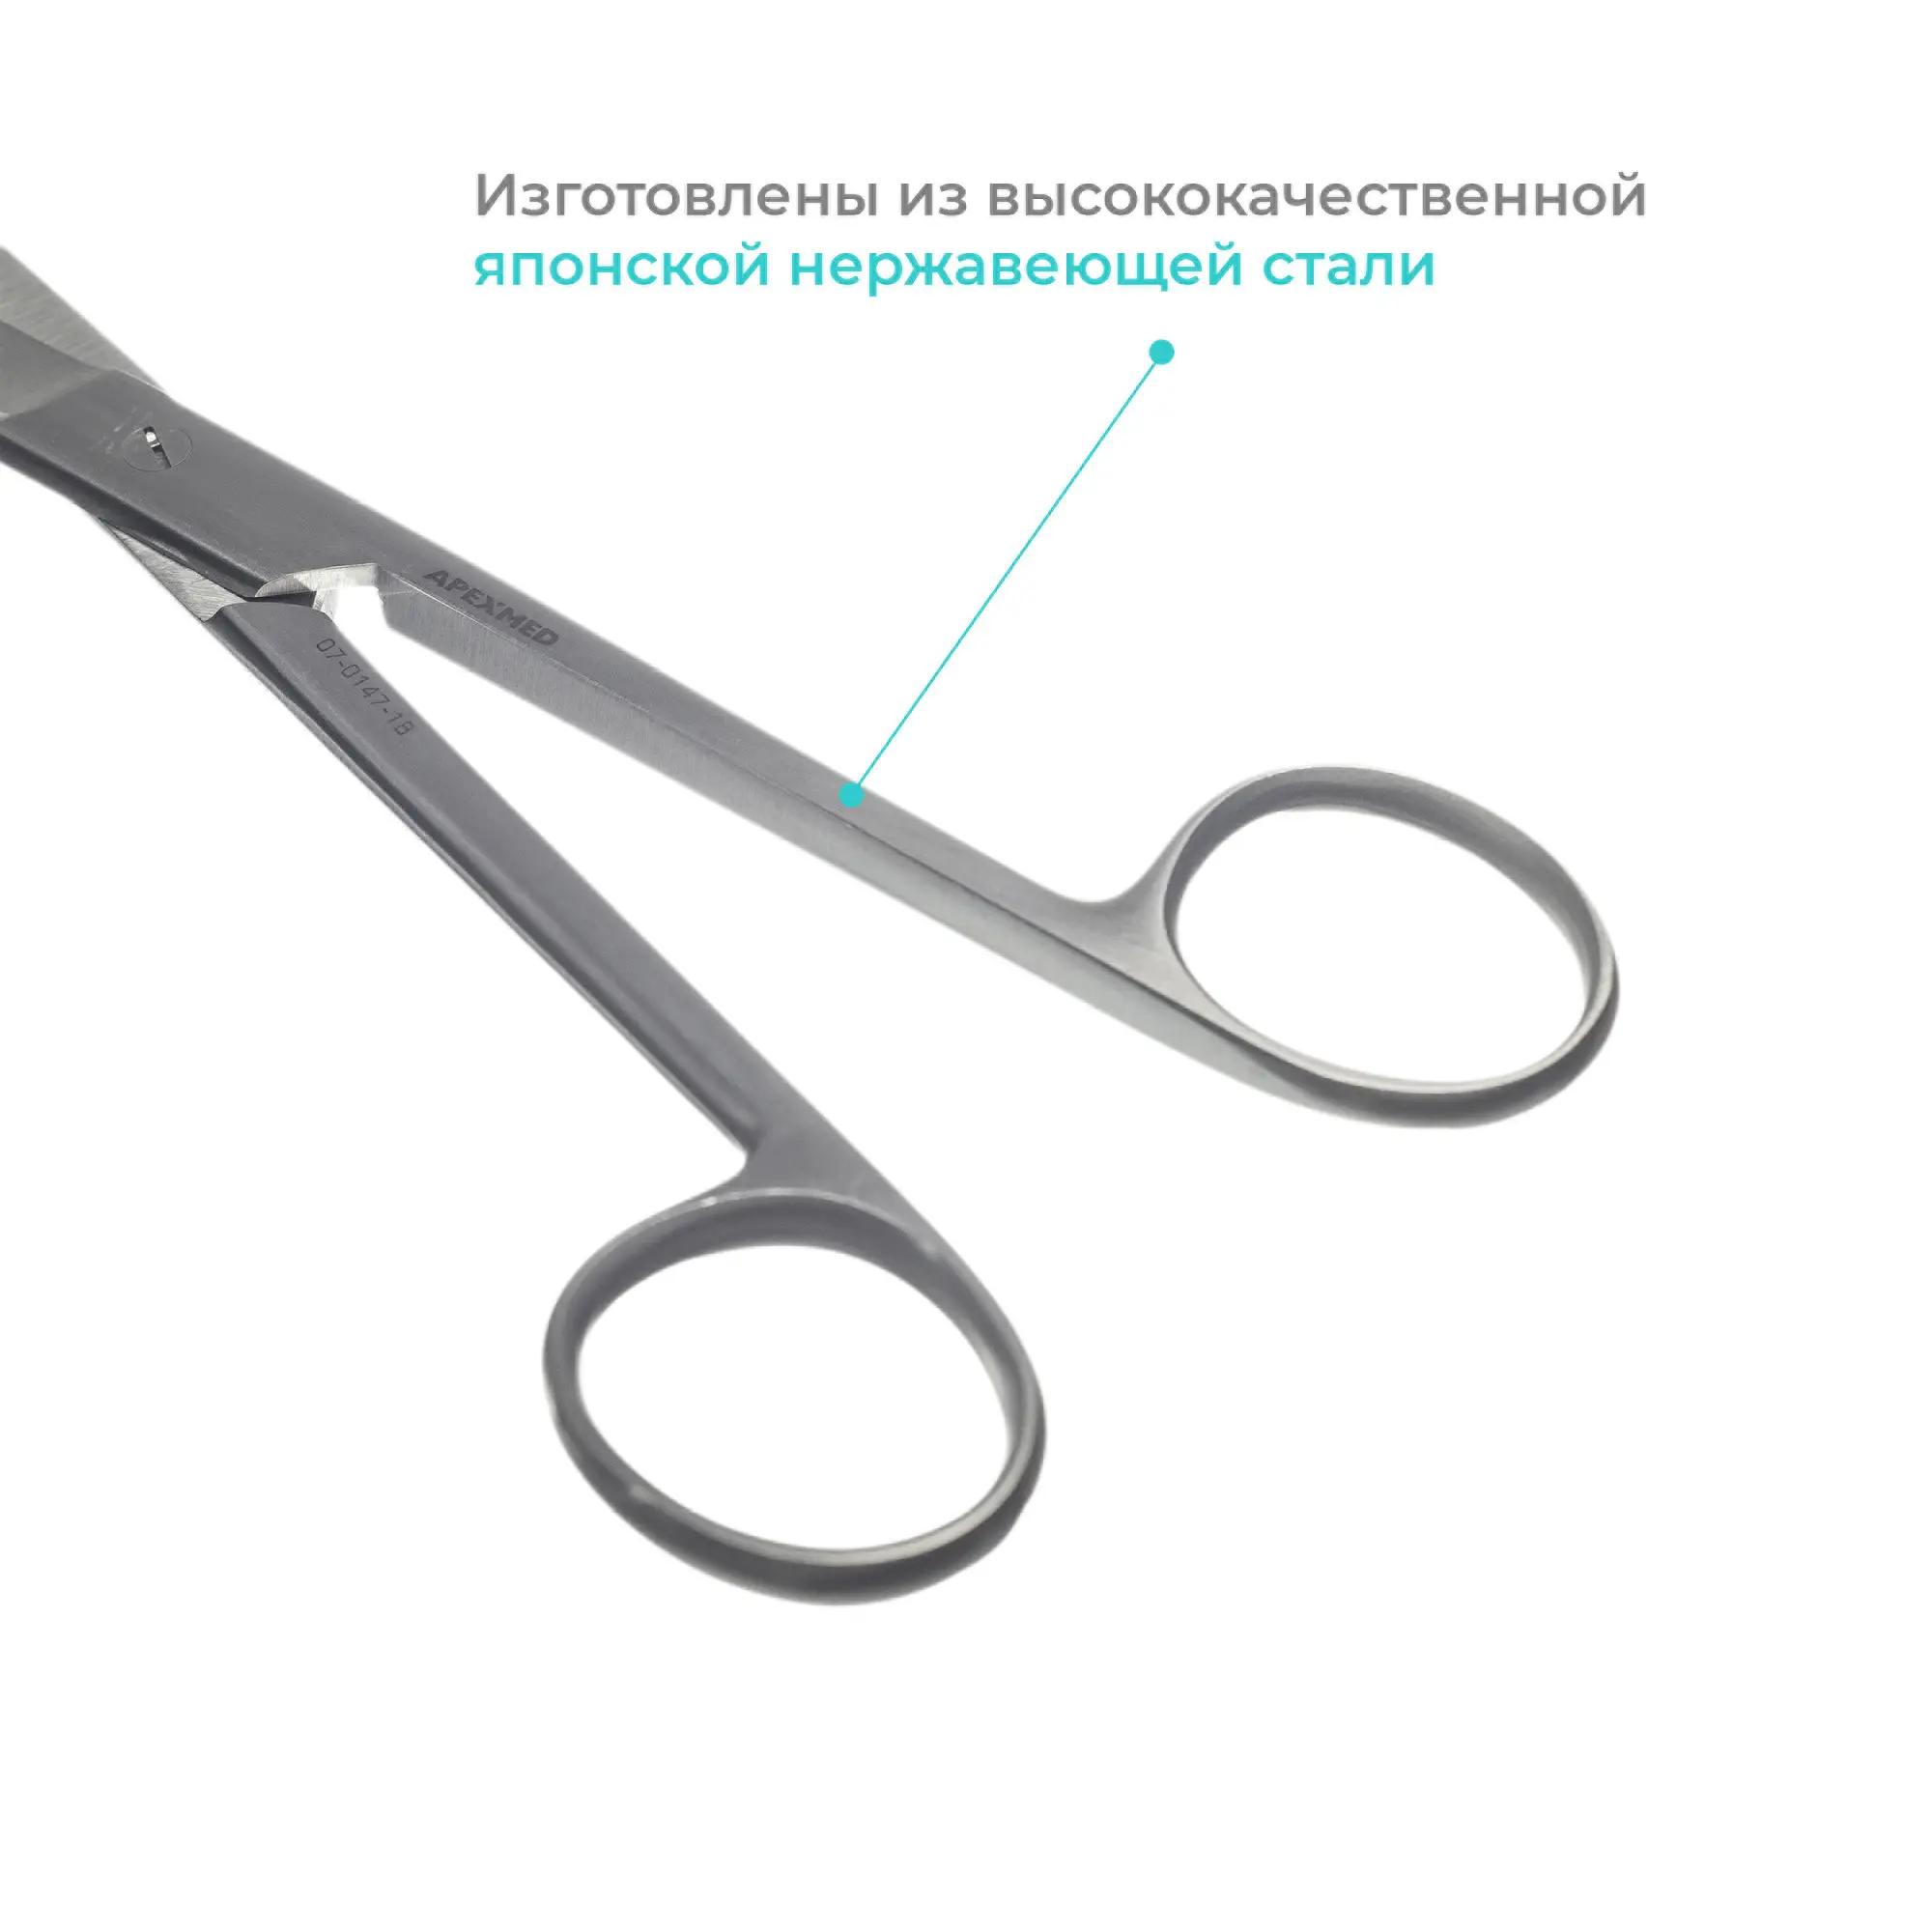 Ножницы хирургические Standard (Стандарт) тупоконечные, прямые, 180 мм, Apexmed